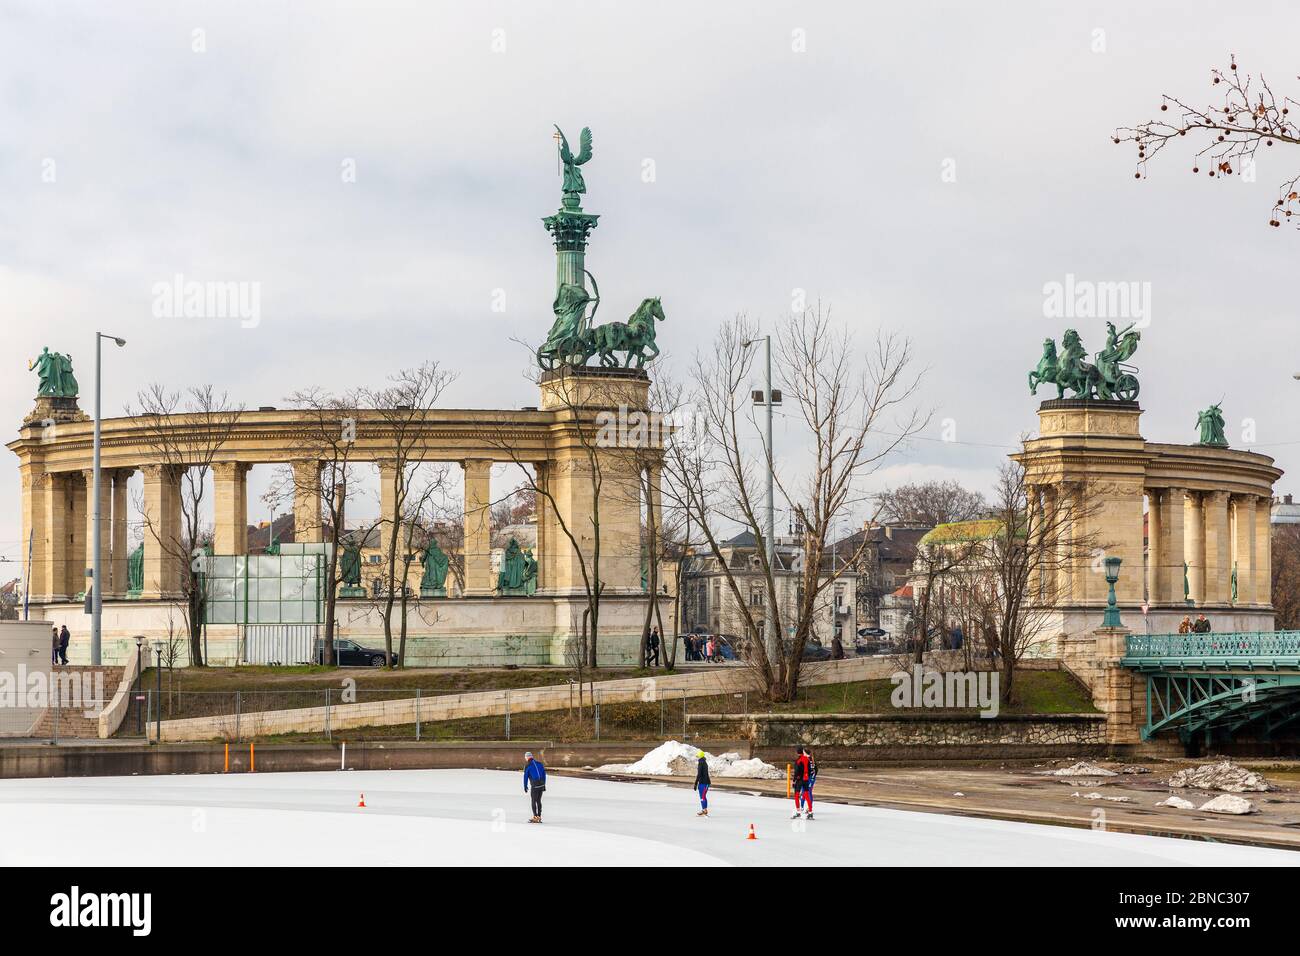 Budapest, Ungarn - 14. Februar 2016: Heldenplatz - Hauptplatz in Budapest. Eisbahn im Stadtpark von Budapest. Menschen Skaten, Sportler trainieren Stockfoto